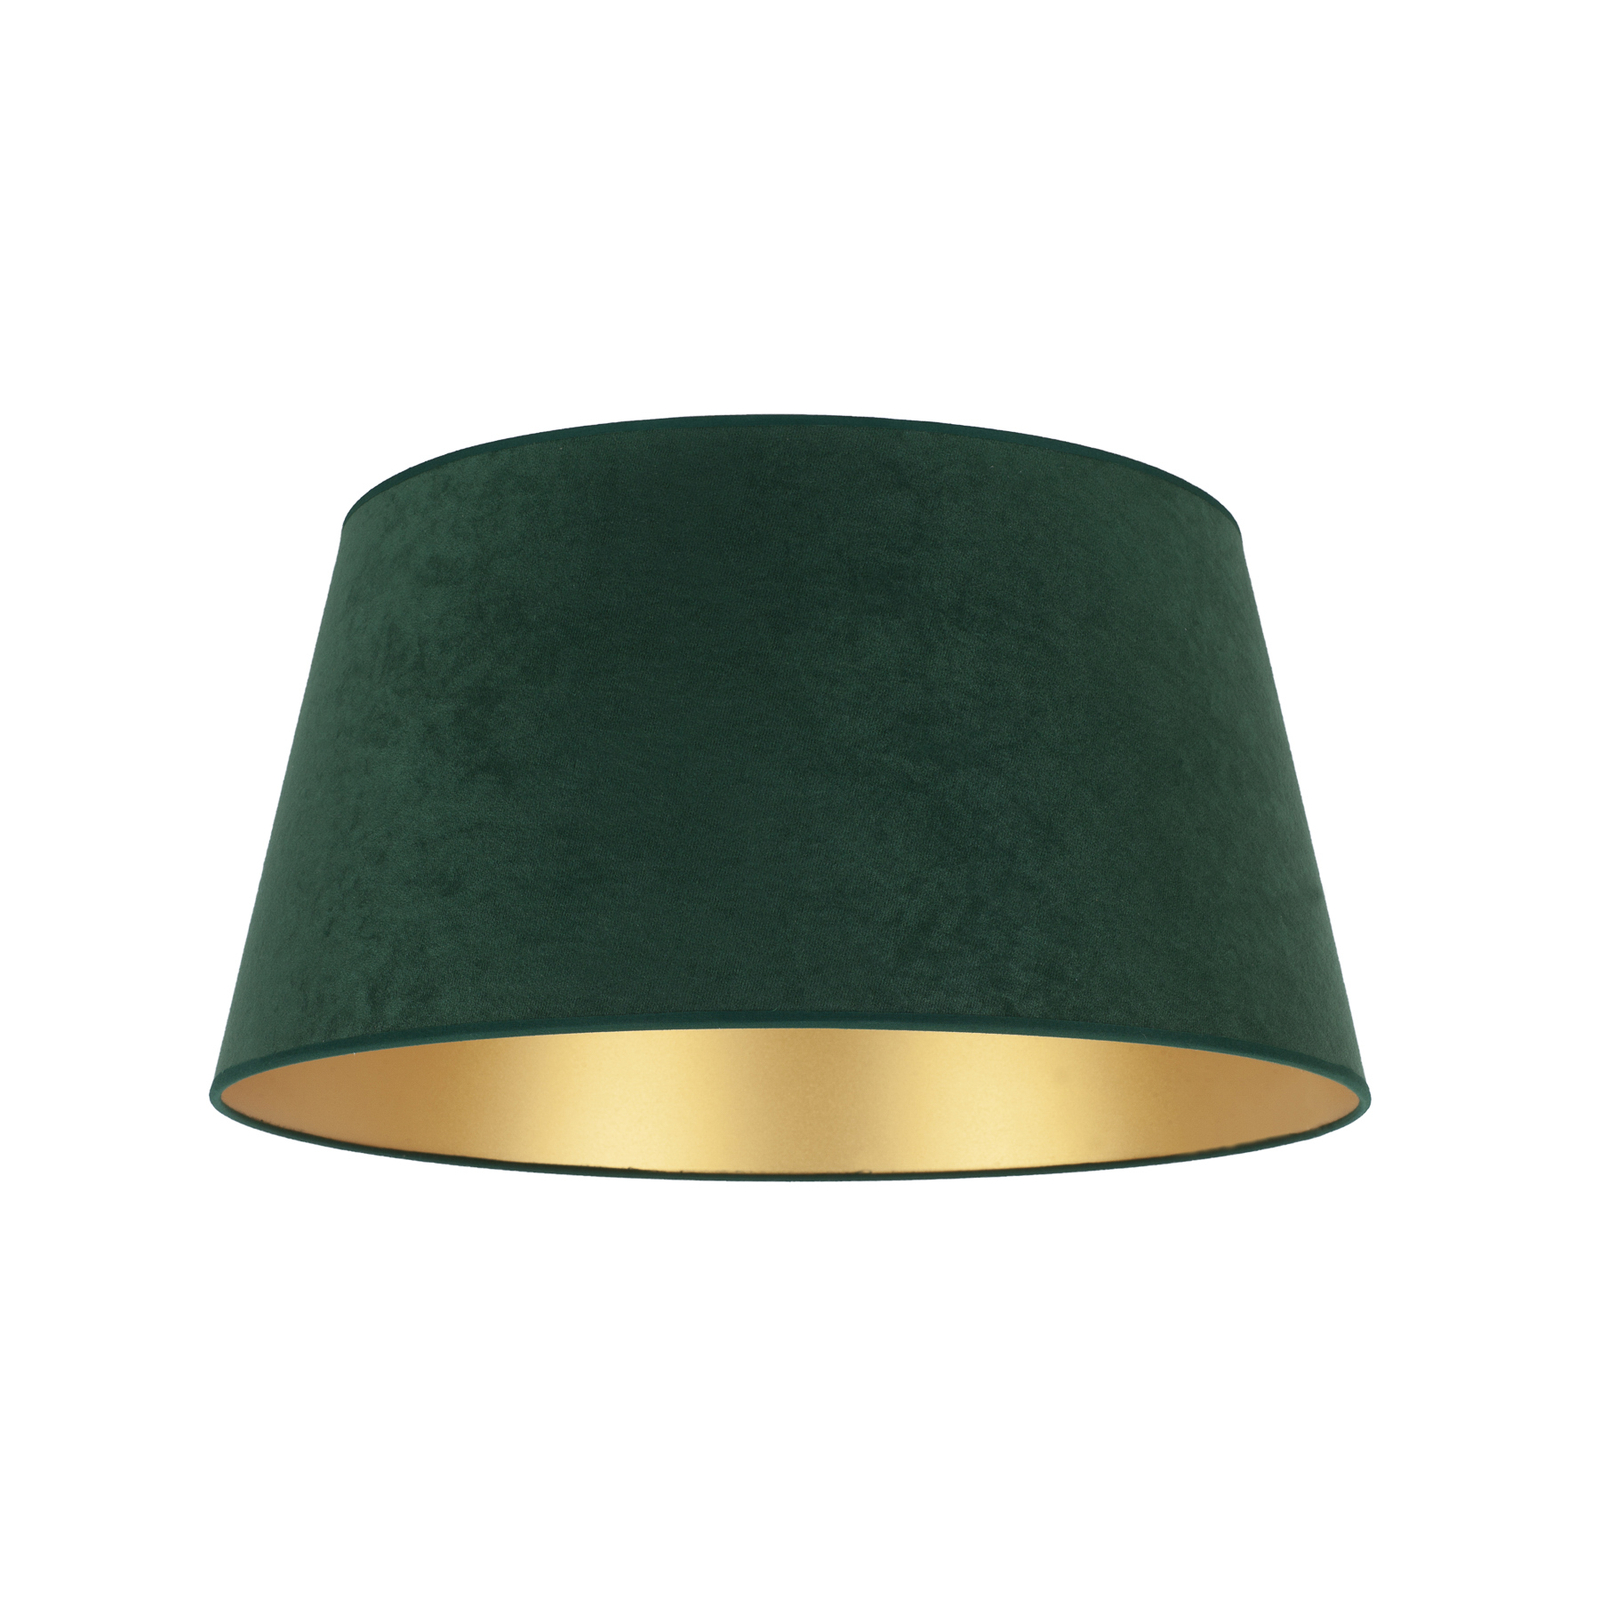 Stínidlo na lampu Cone výška 22,5 cm, zelená/zlatá